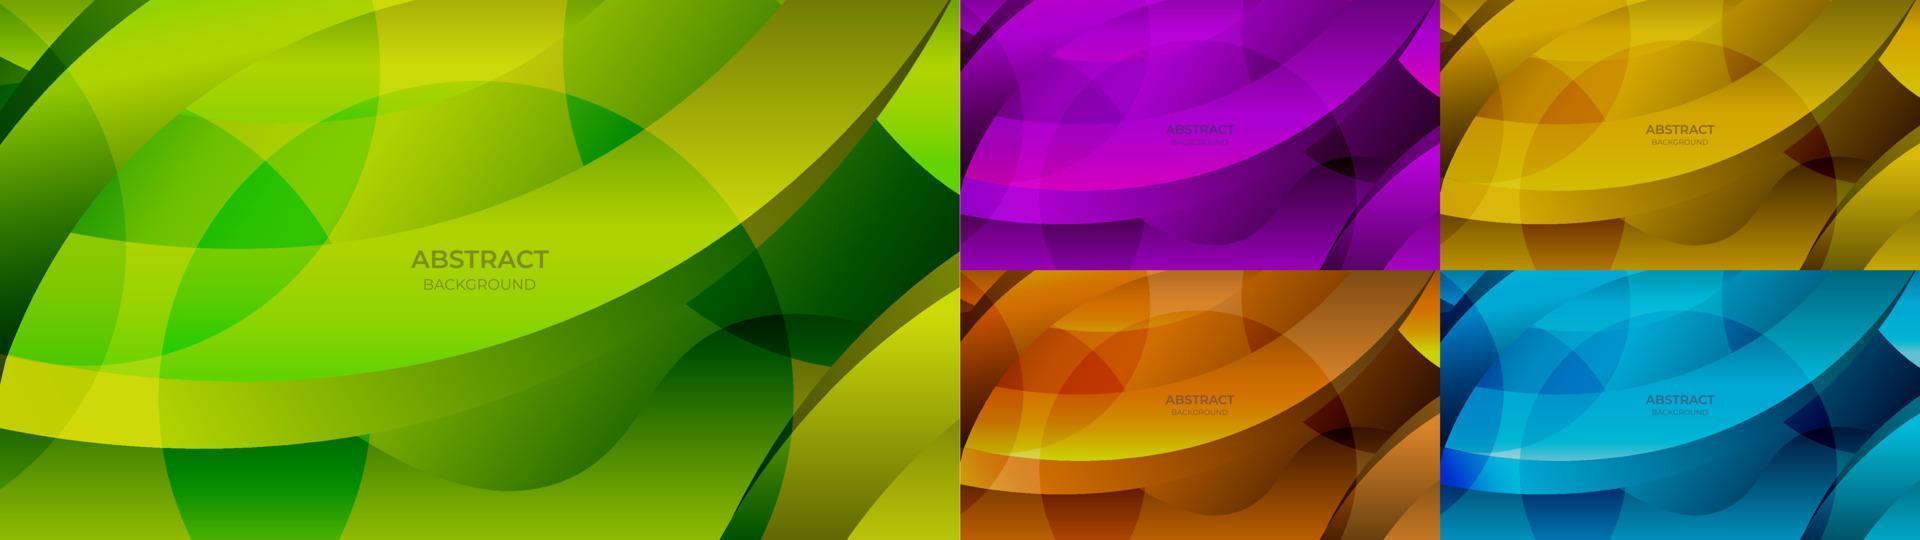 abstrakt bakgrund färgrik lutning grön, lila, gul, orange och blå färg. vektor illustration